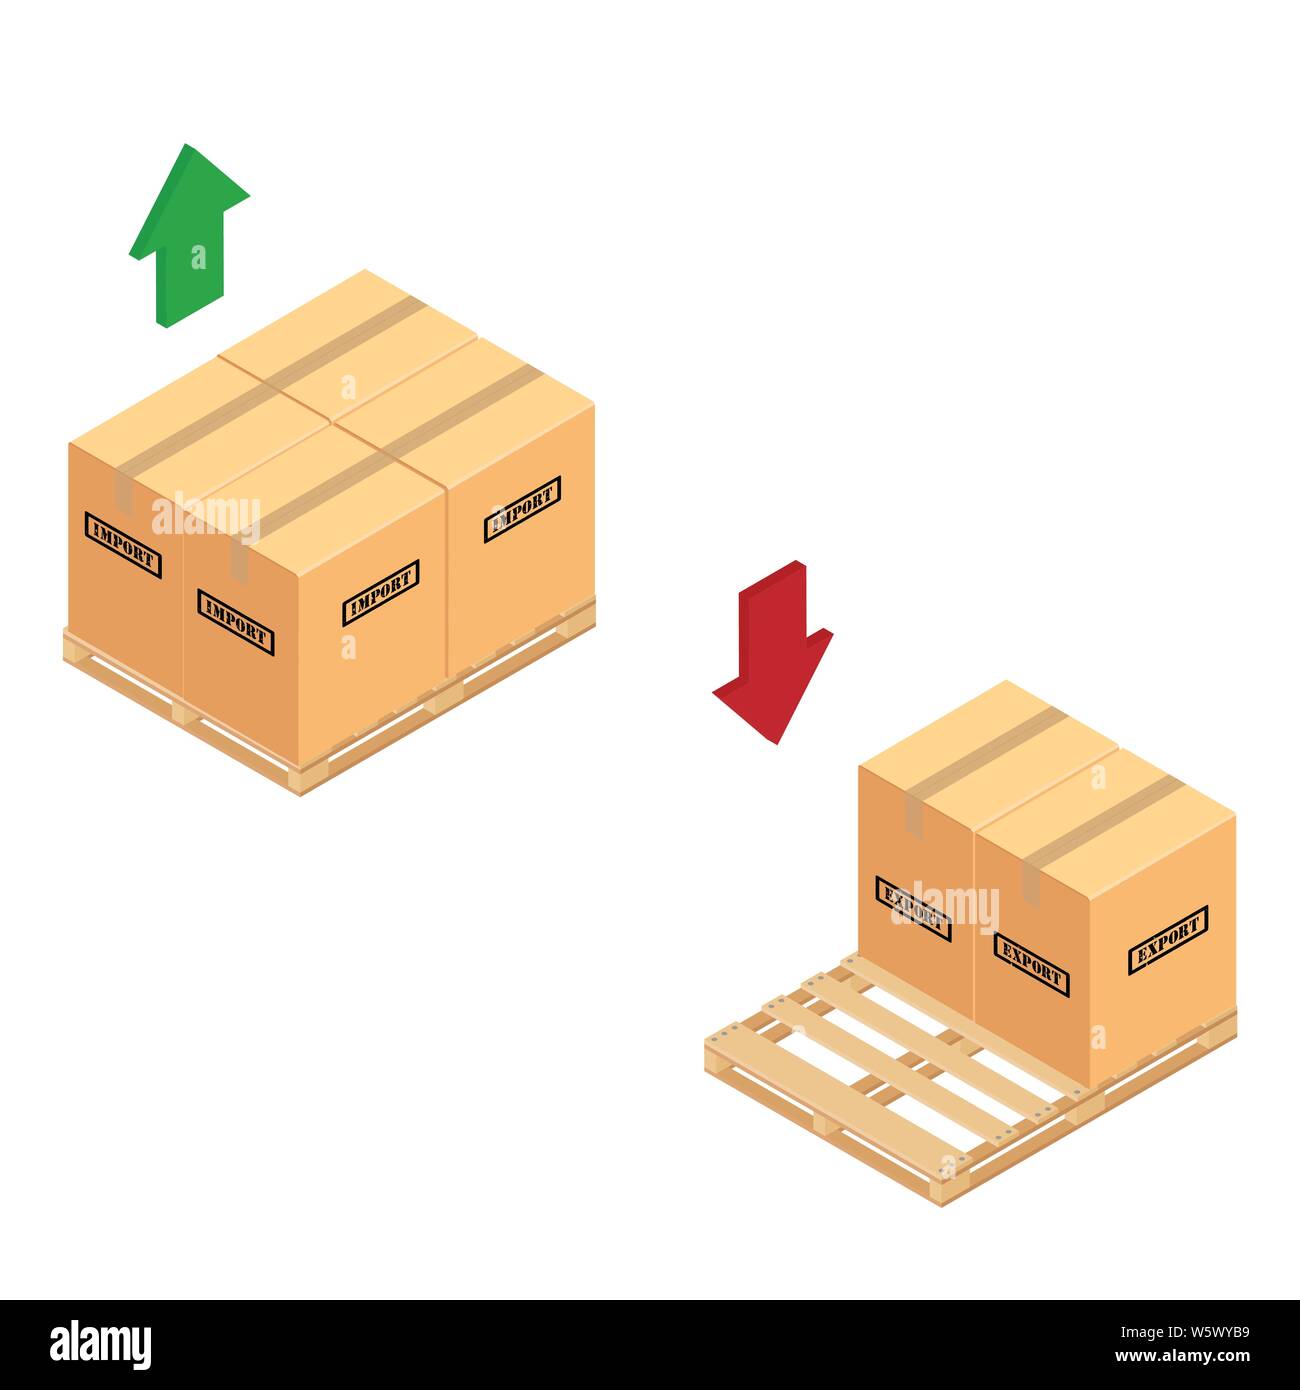 Cajas en palet de madera. |Almacén de importación y exportación bandeja de cartón cajas apiladas palet de madera vista isométrica Imagen Vector de stock Alamy